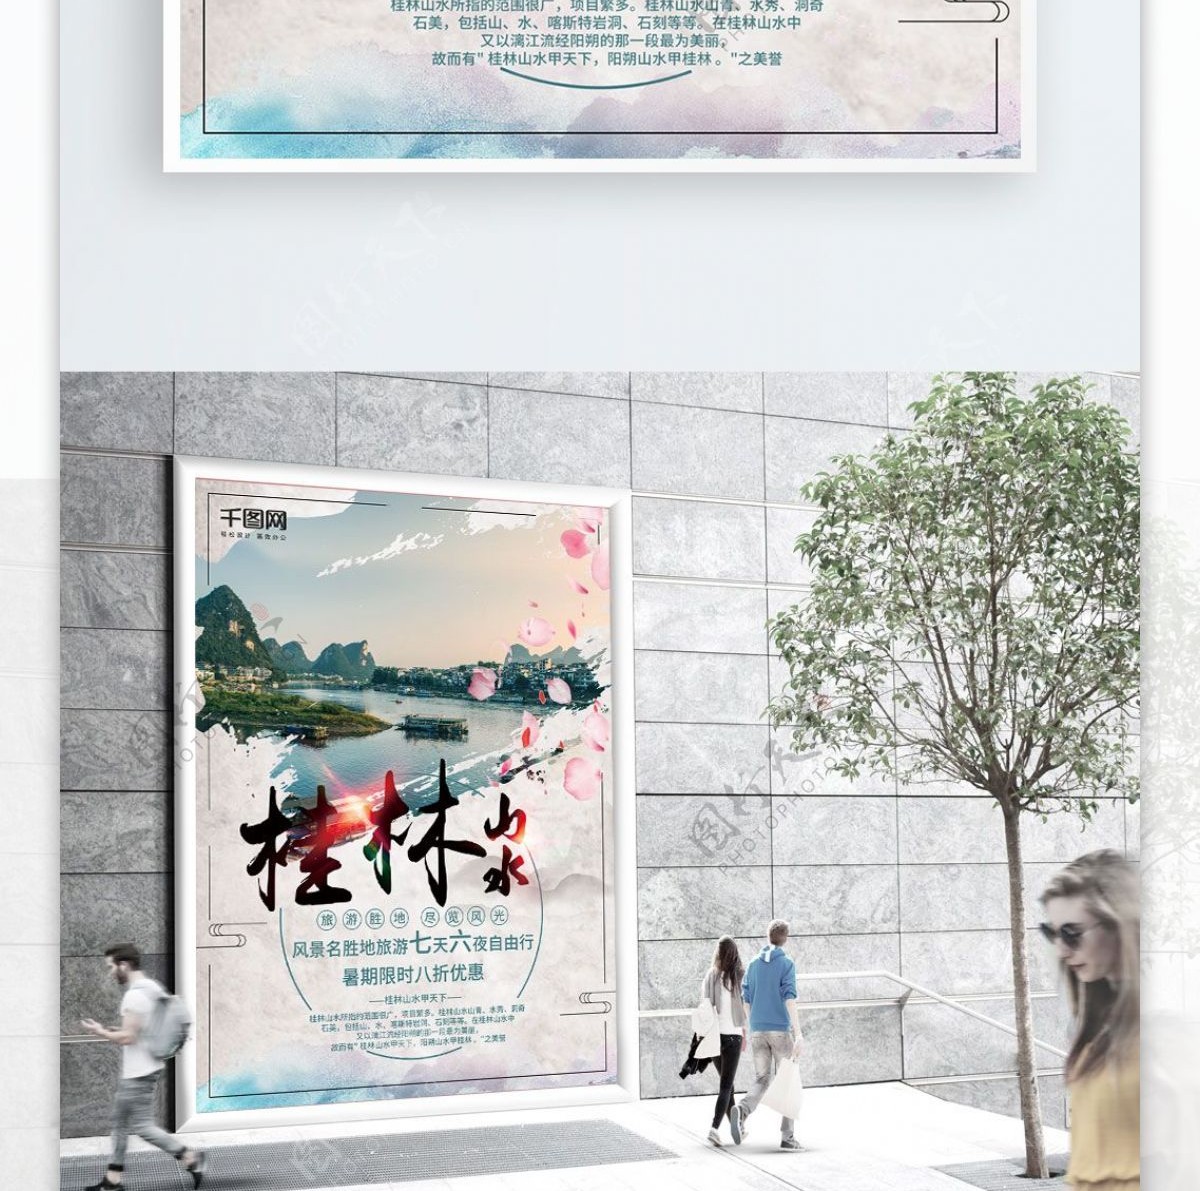 桂林山水国内旅游海报